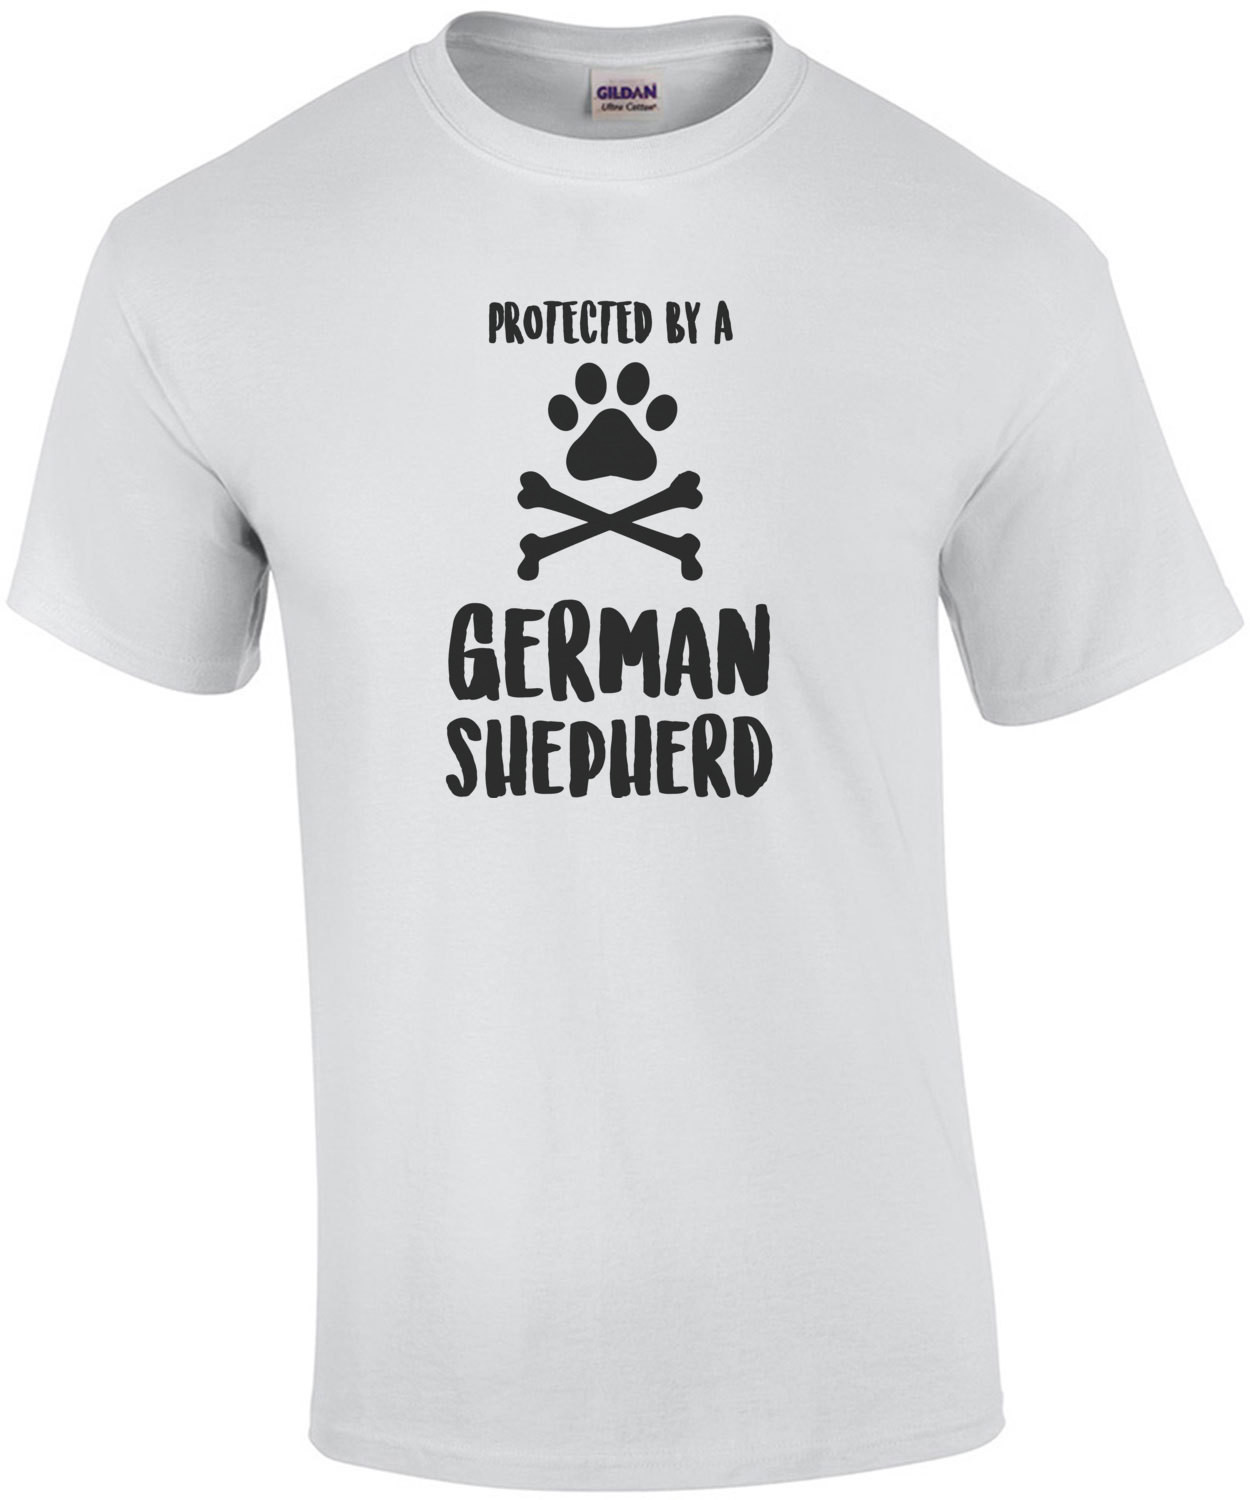 Protected by a German Shepherd - German Shepherd T-Shirt